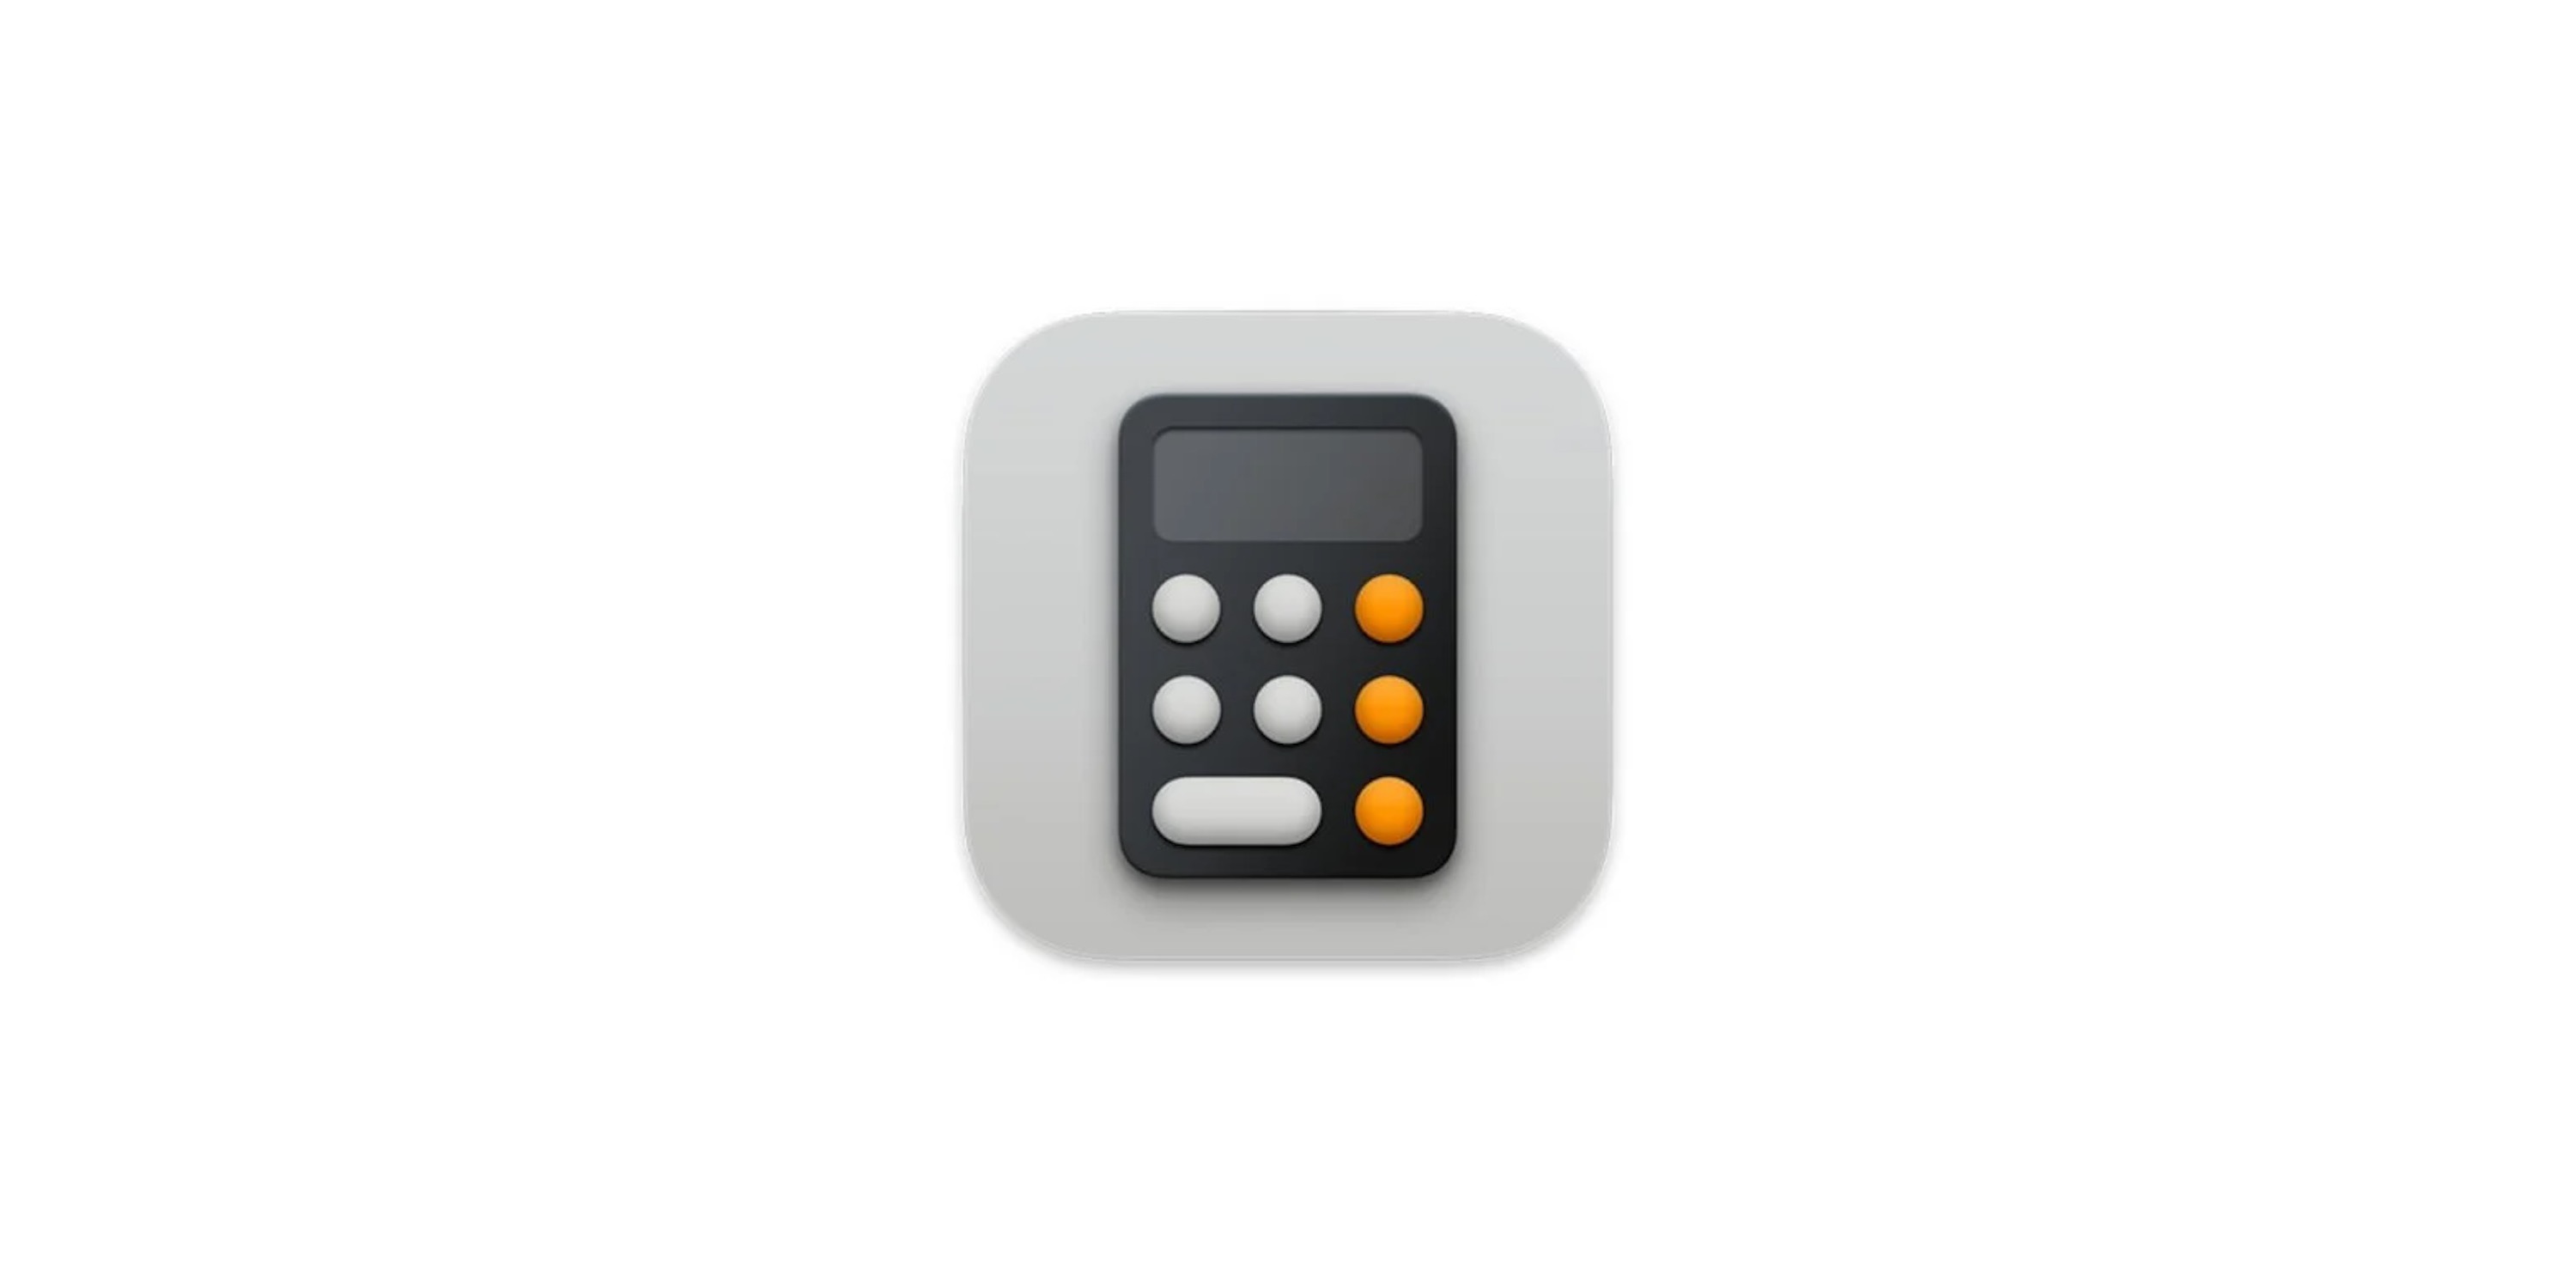 IPad dostanie w końcu oficjalną aplikację Kalkulator